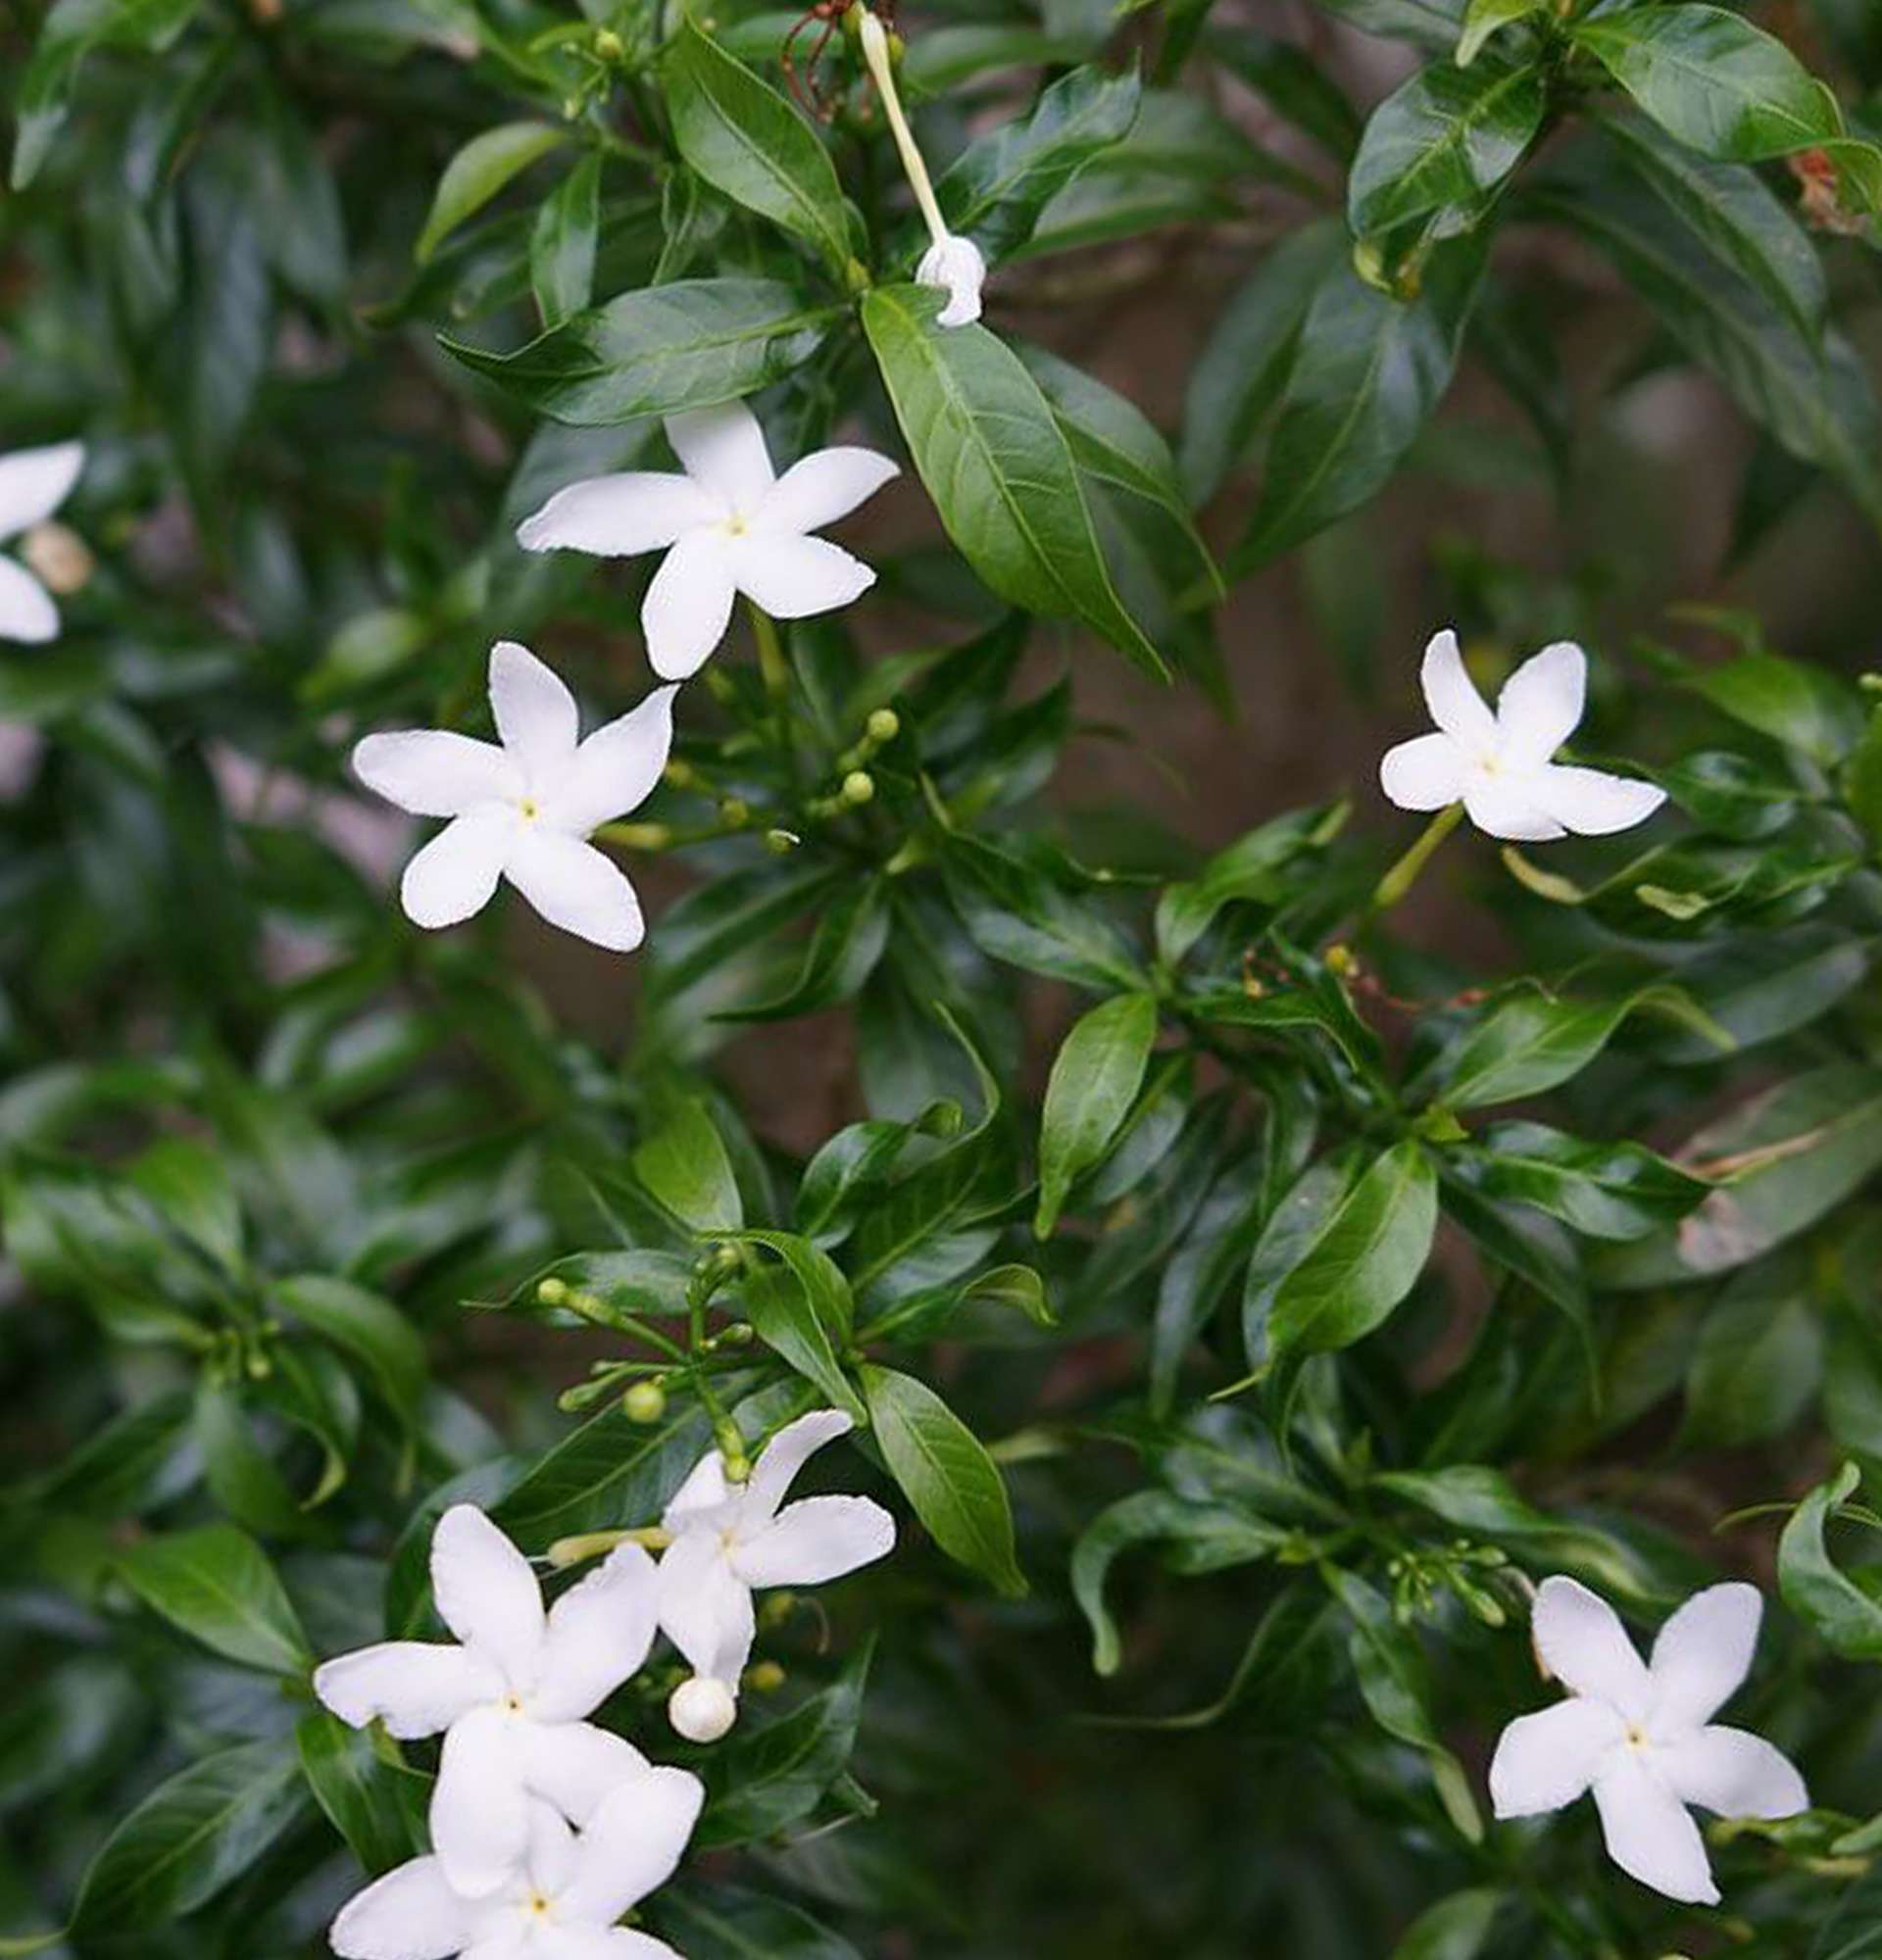 Gardenie im Gartenfoto - weiß blühend